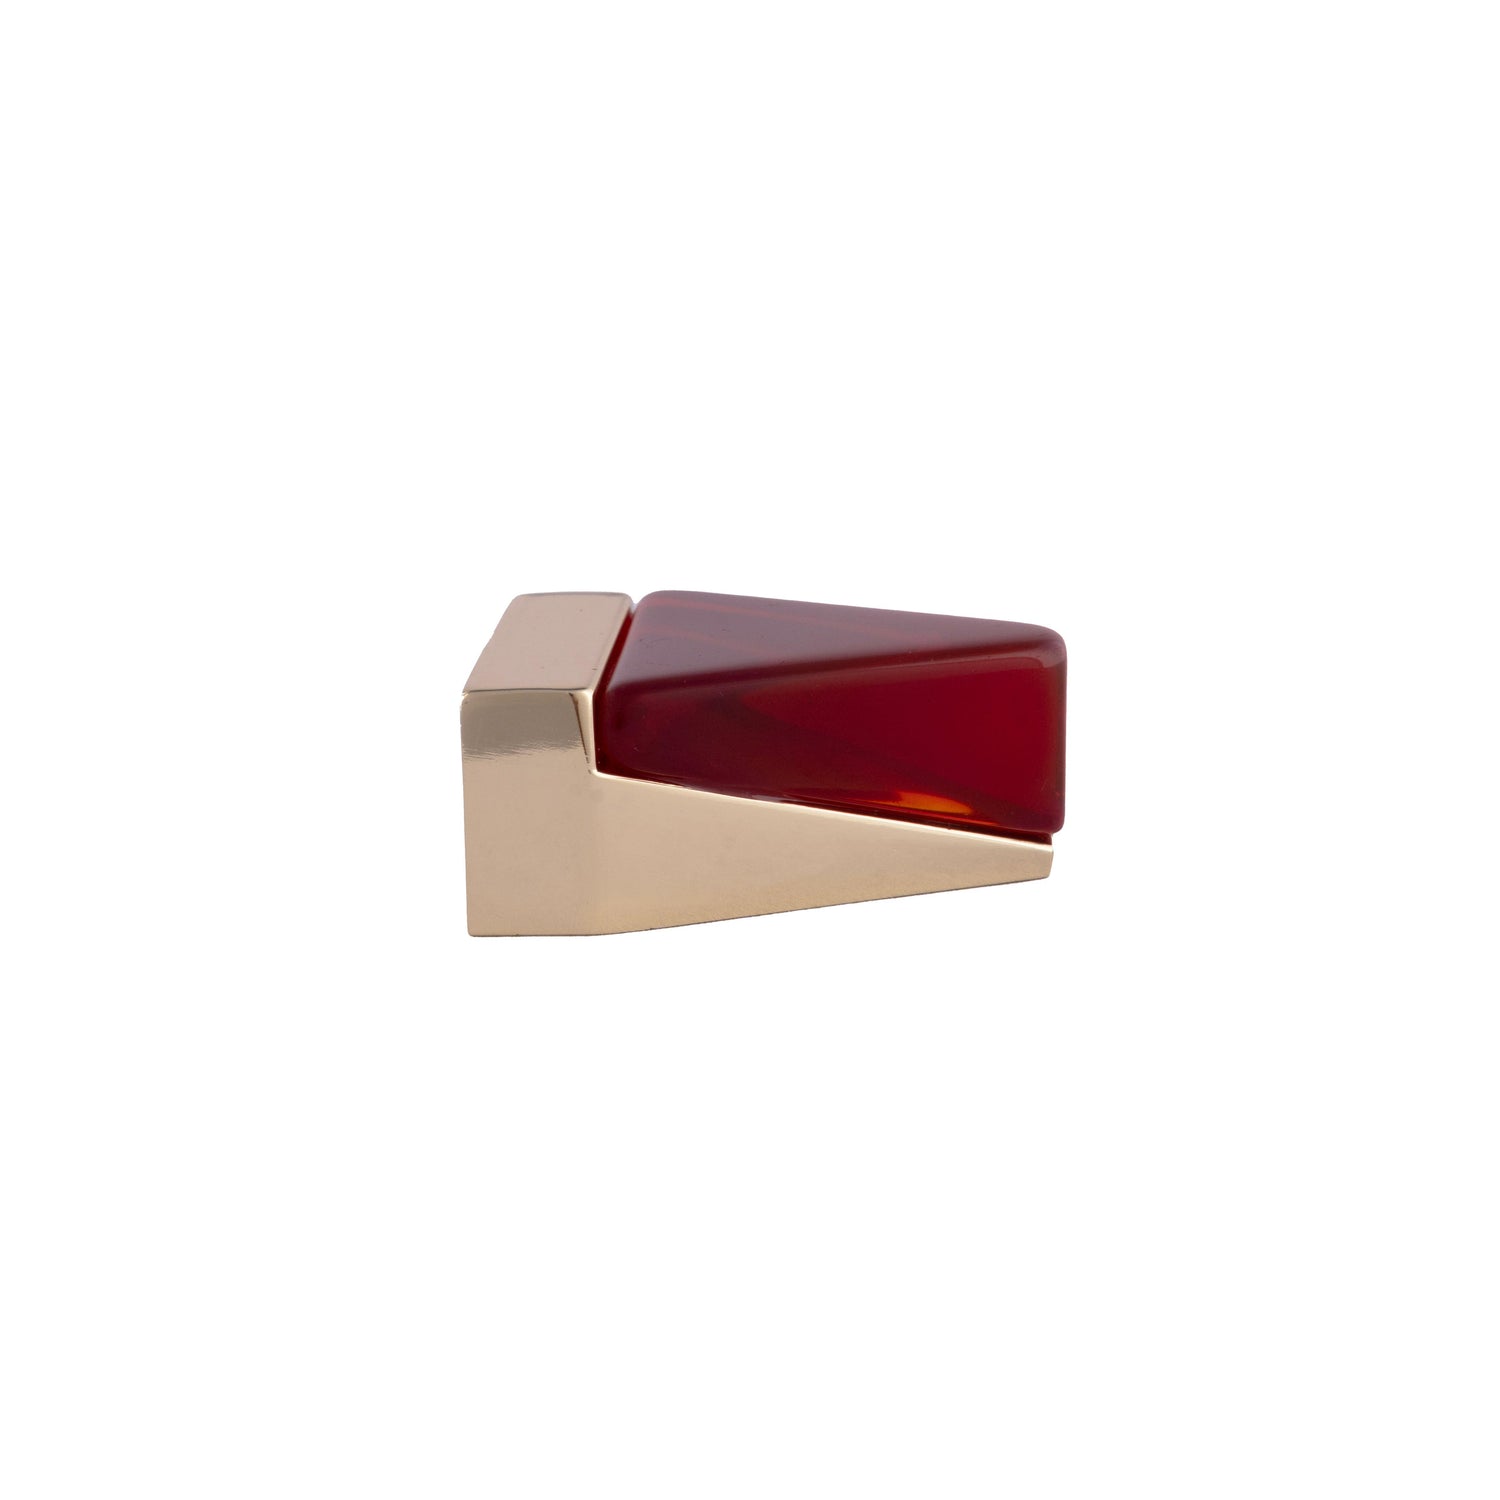 Gable Knob Knob 36mm / Red / Zinc Alloy - M A N T A R A